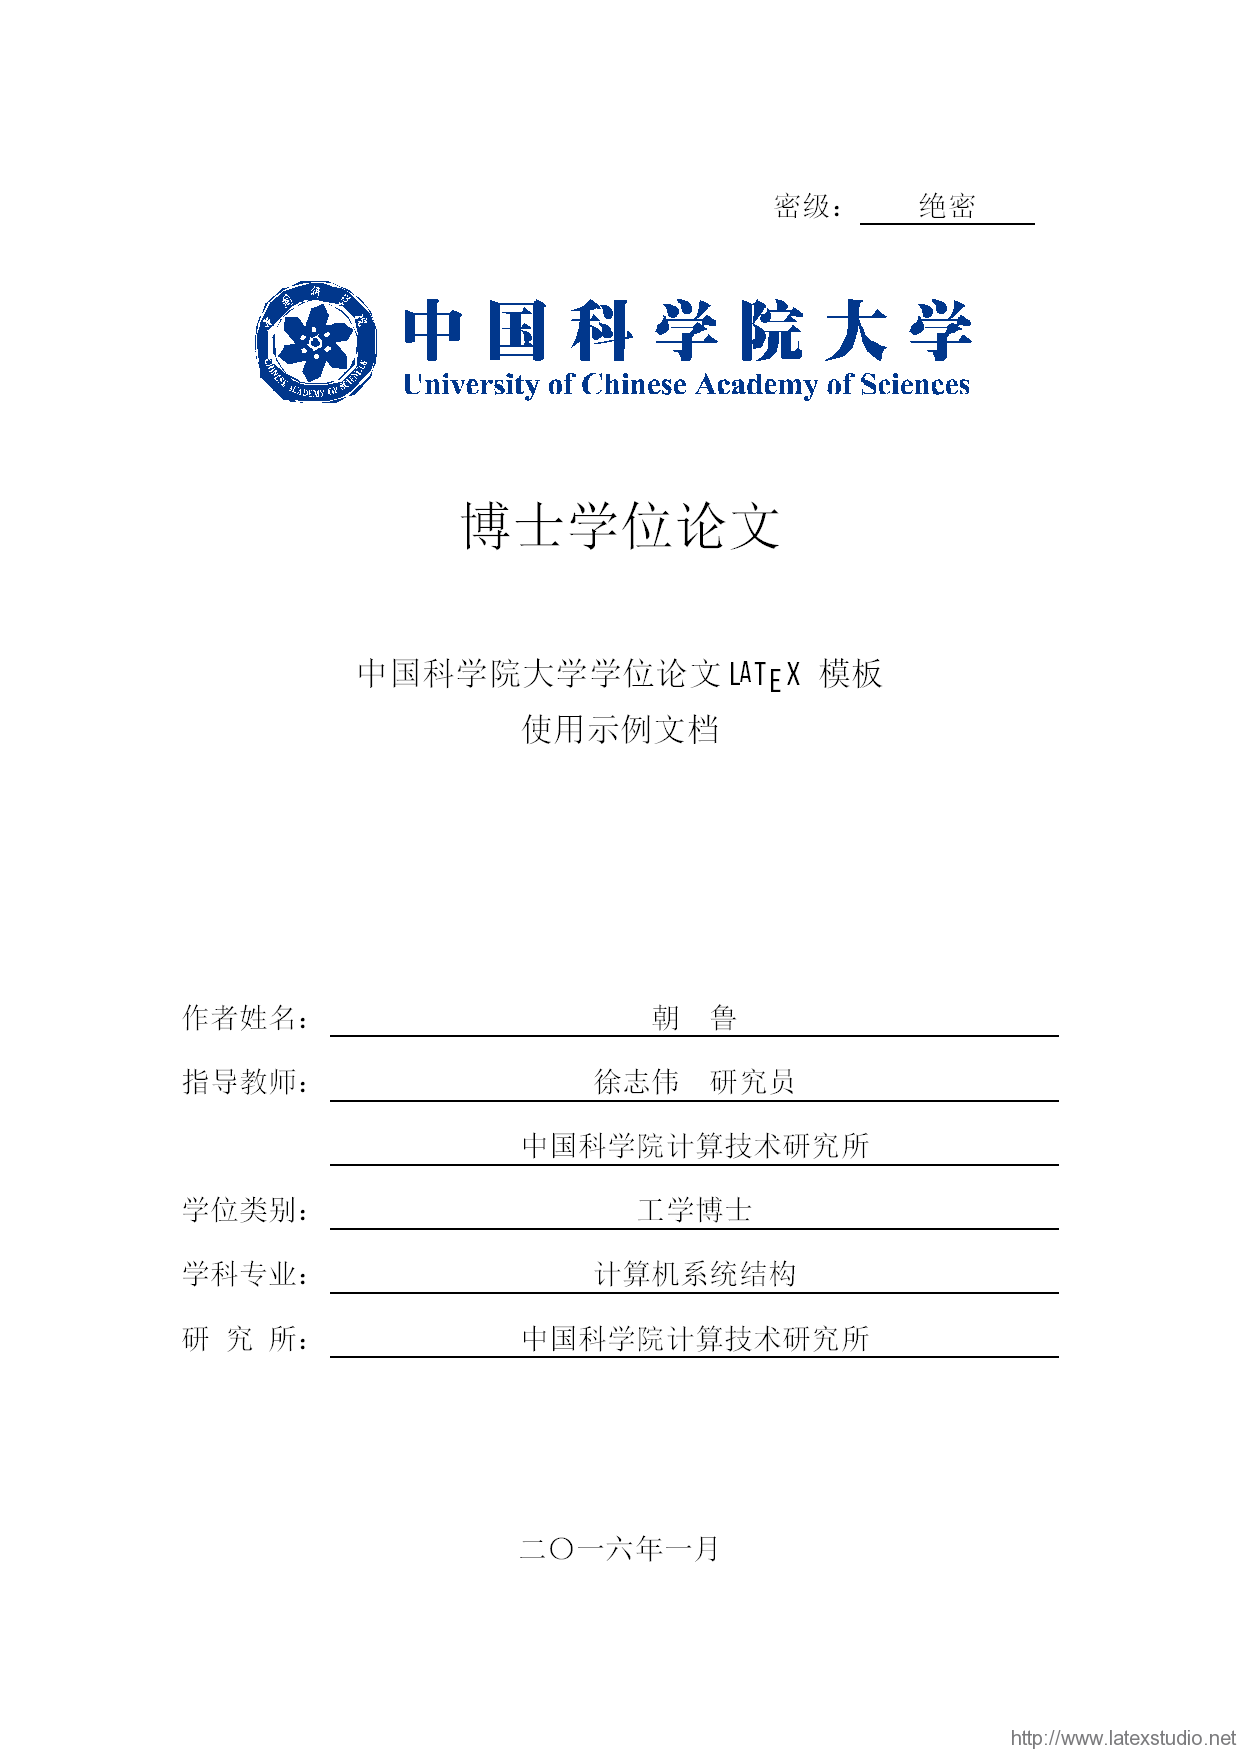 上海海事大学 LaTeX 学位论文模板 - LaTeX 工作室